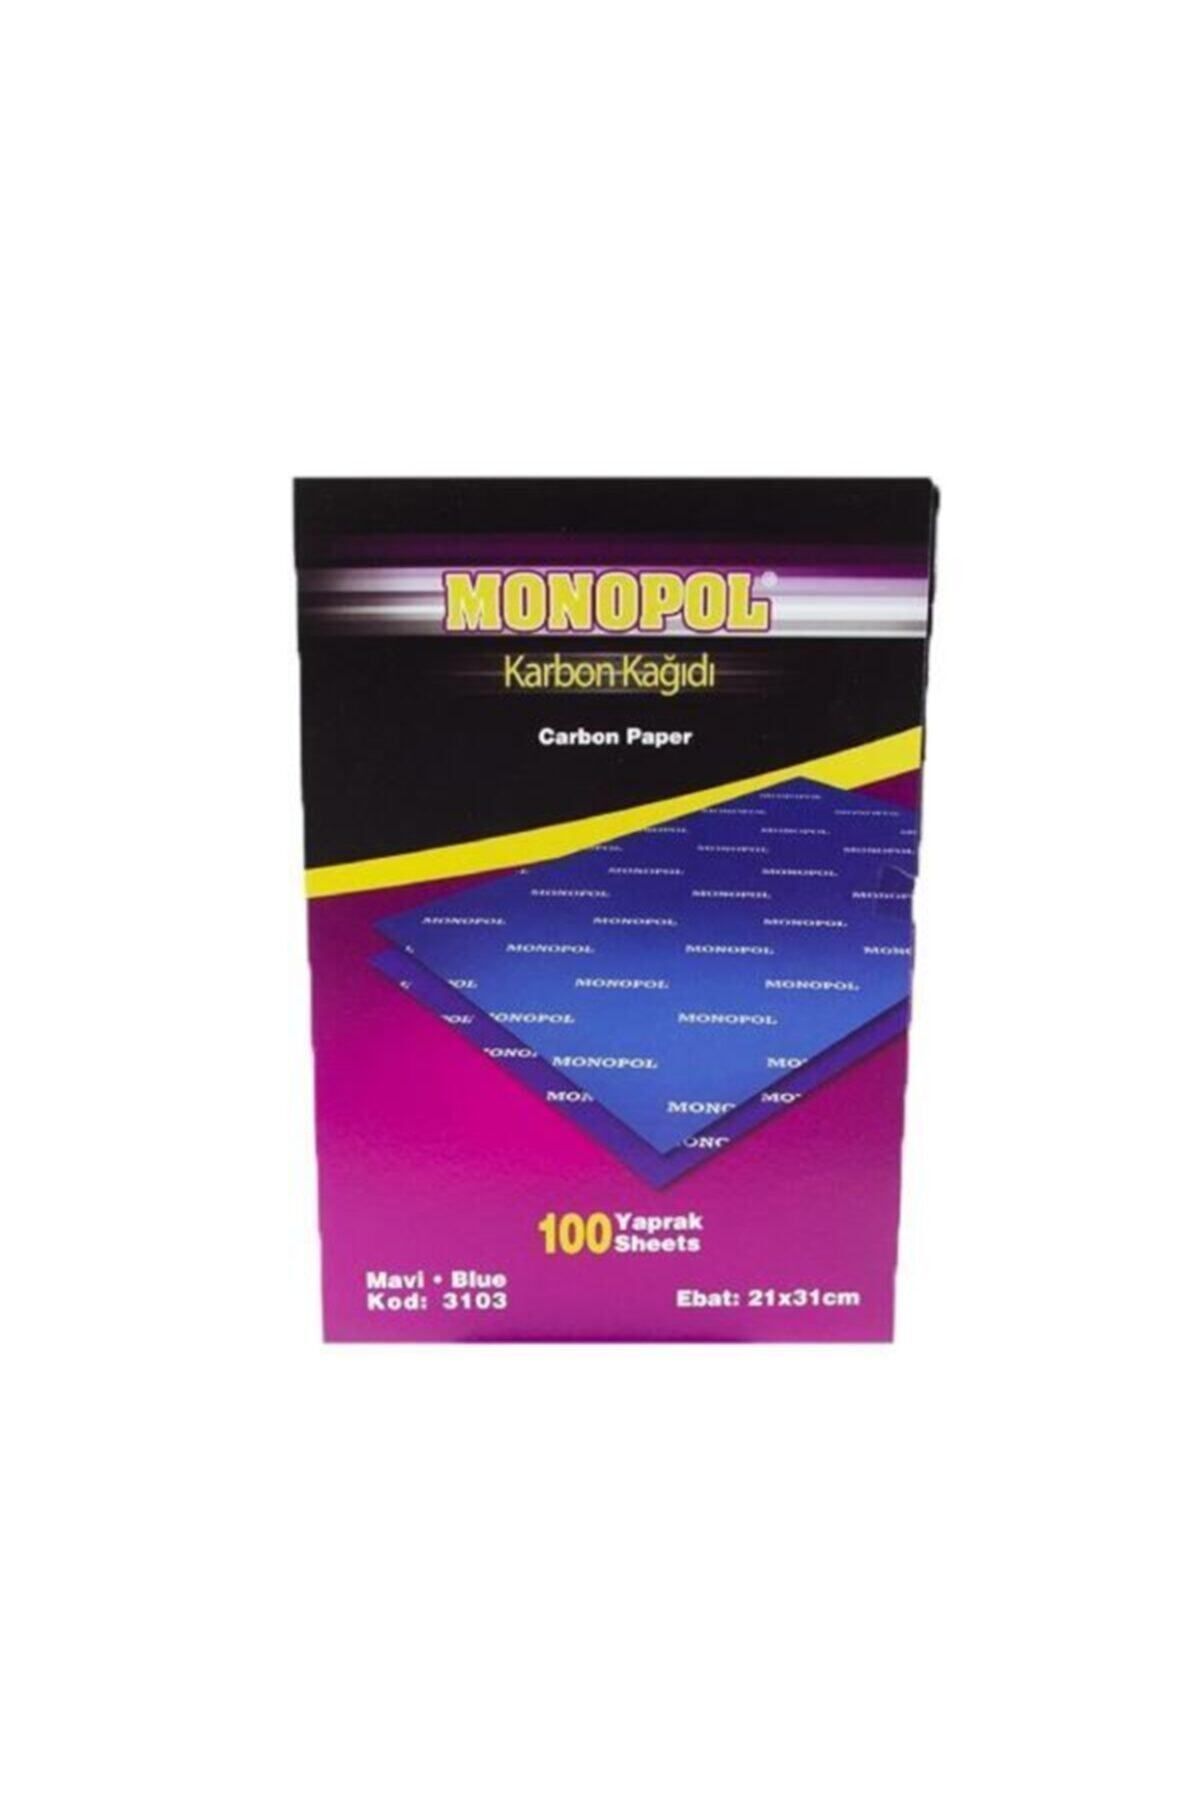 Monopol Karbon Kağıdı Karbon Kağıdı Renk Seçeneği 5 Adet